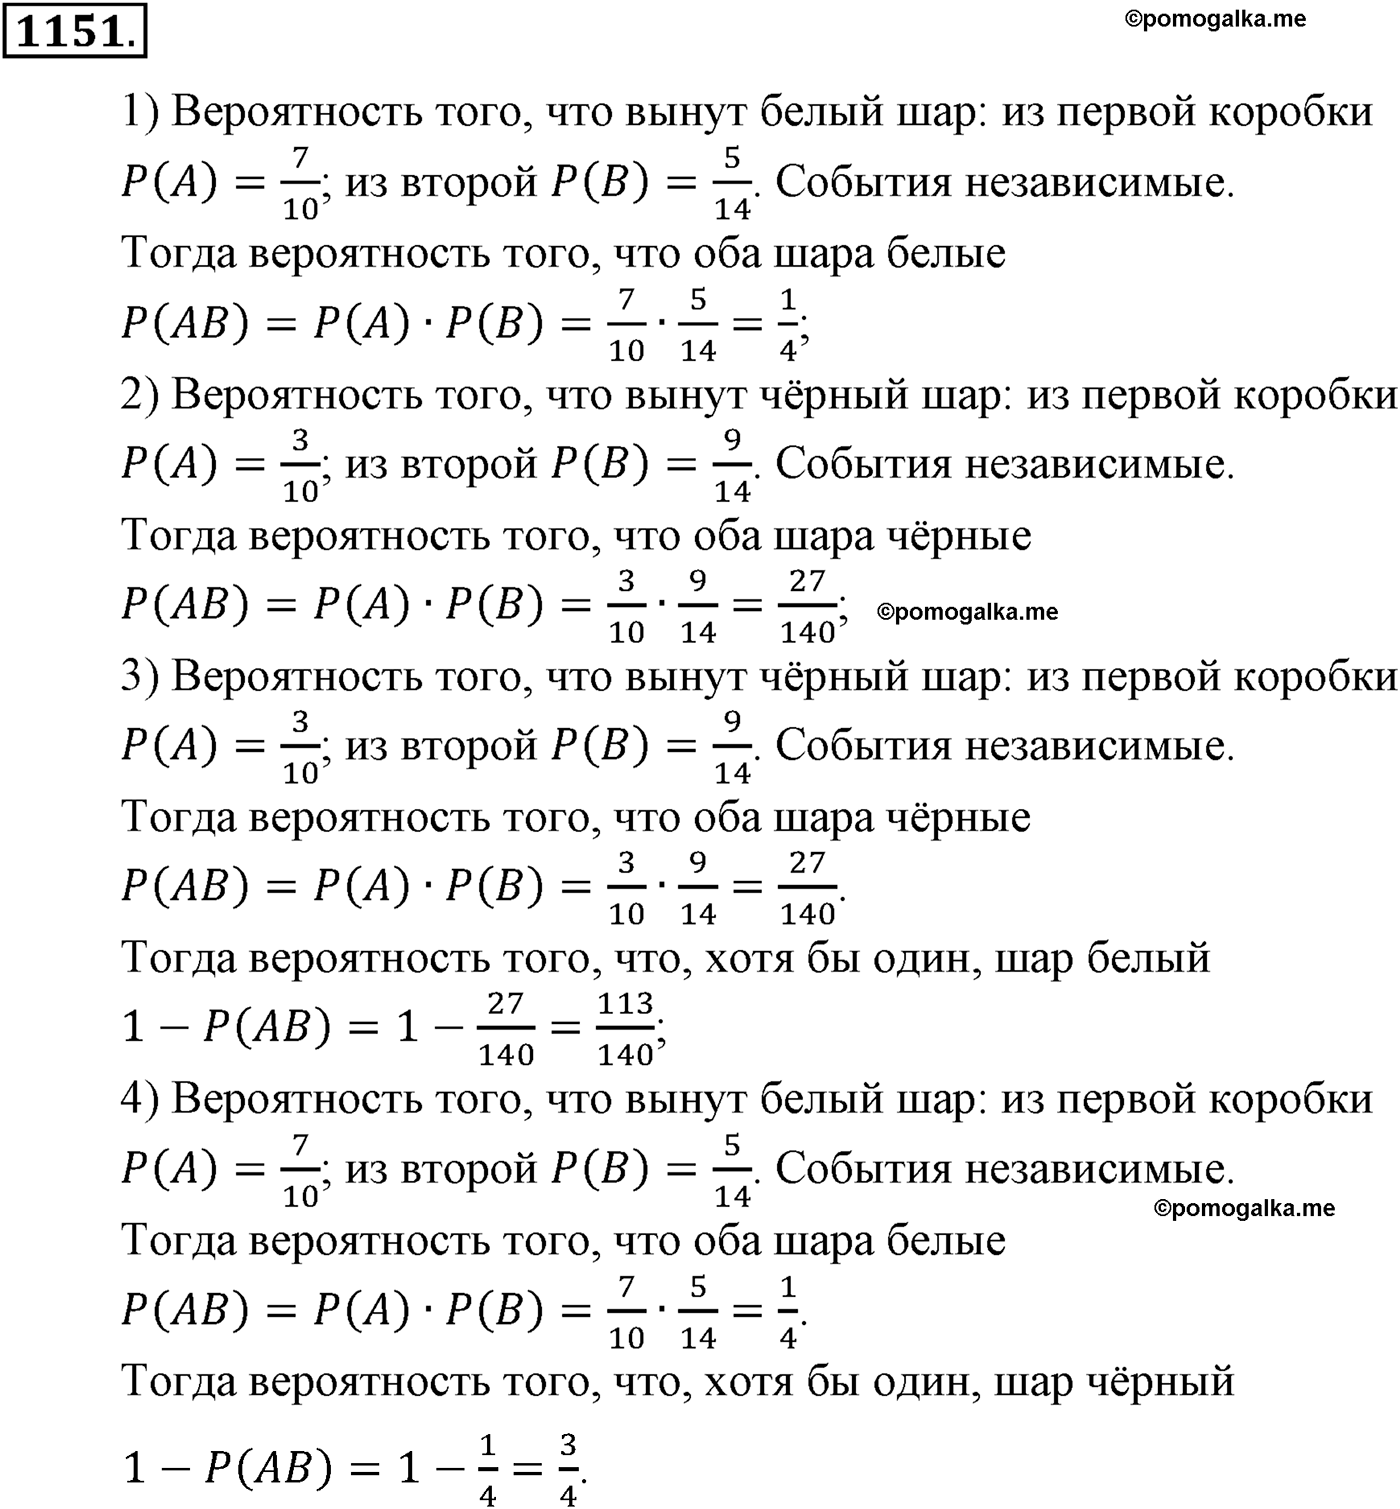 разбор задачи №1151 по алгебре за 10-11 класс из учебника Алимова, Колягина